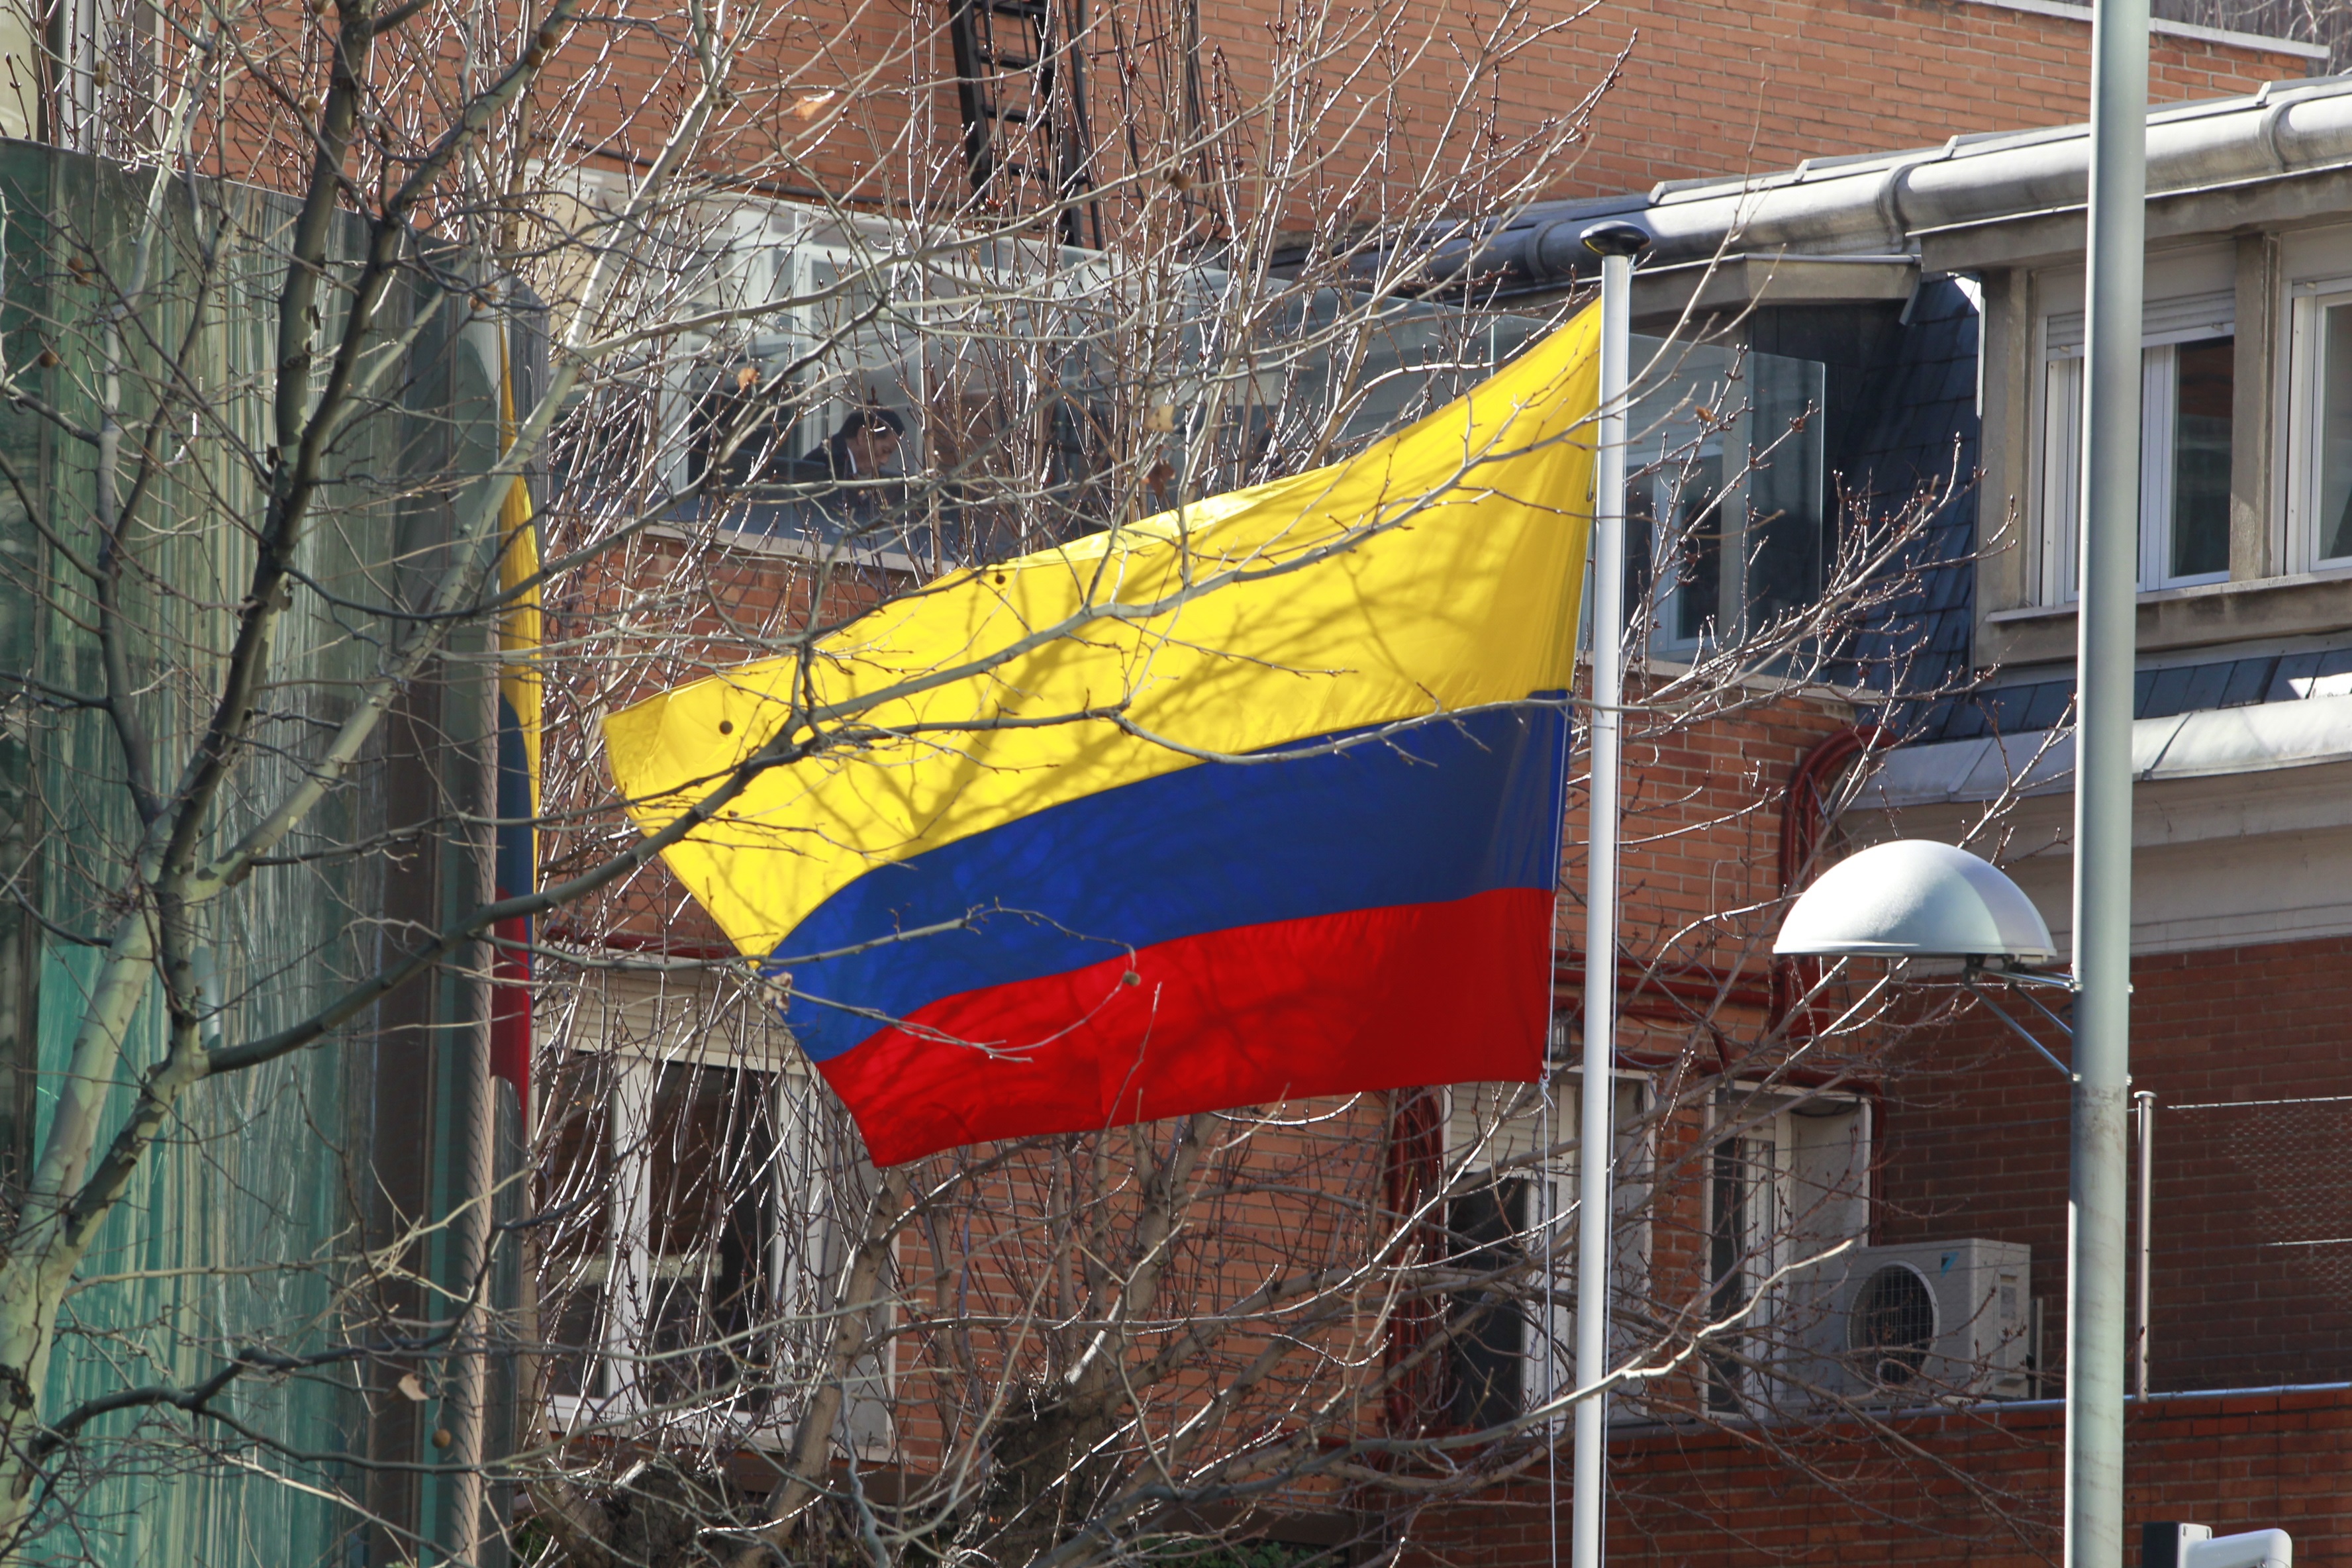  Imagen de archivo de una bandera de Colombia. Esta será la fecha en la que el presidente electo se posesionará. Foto: Europa Press